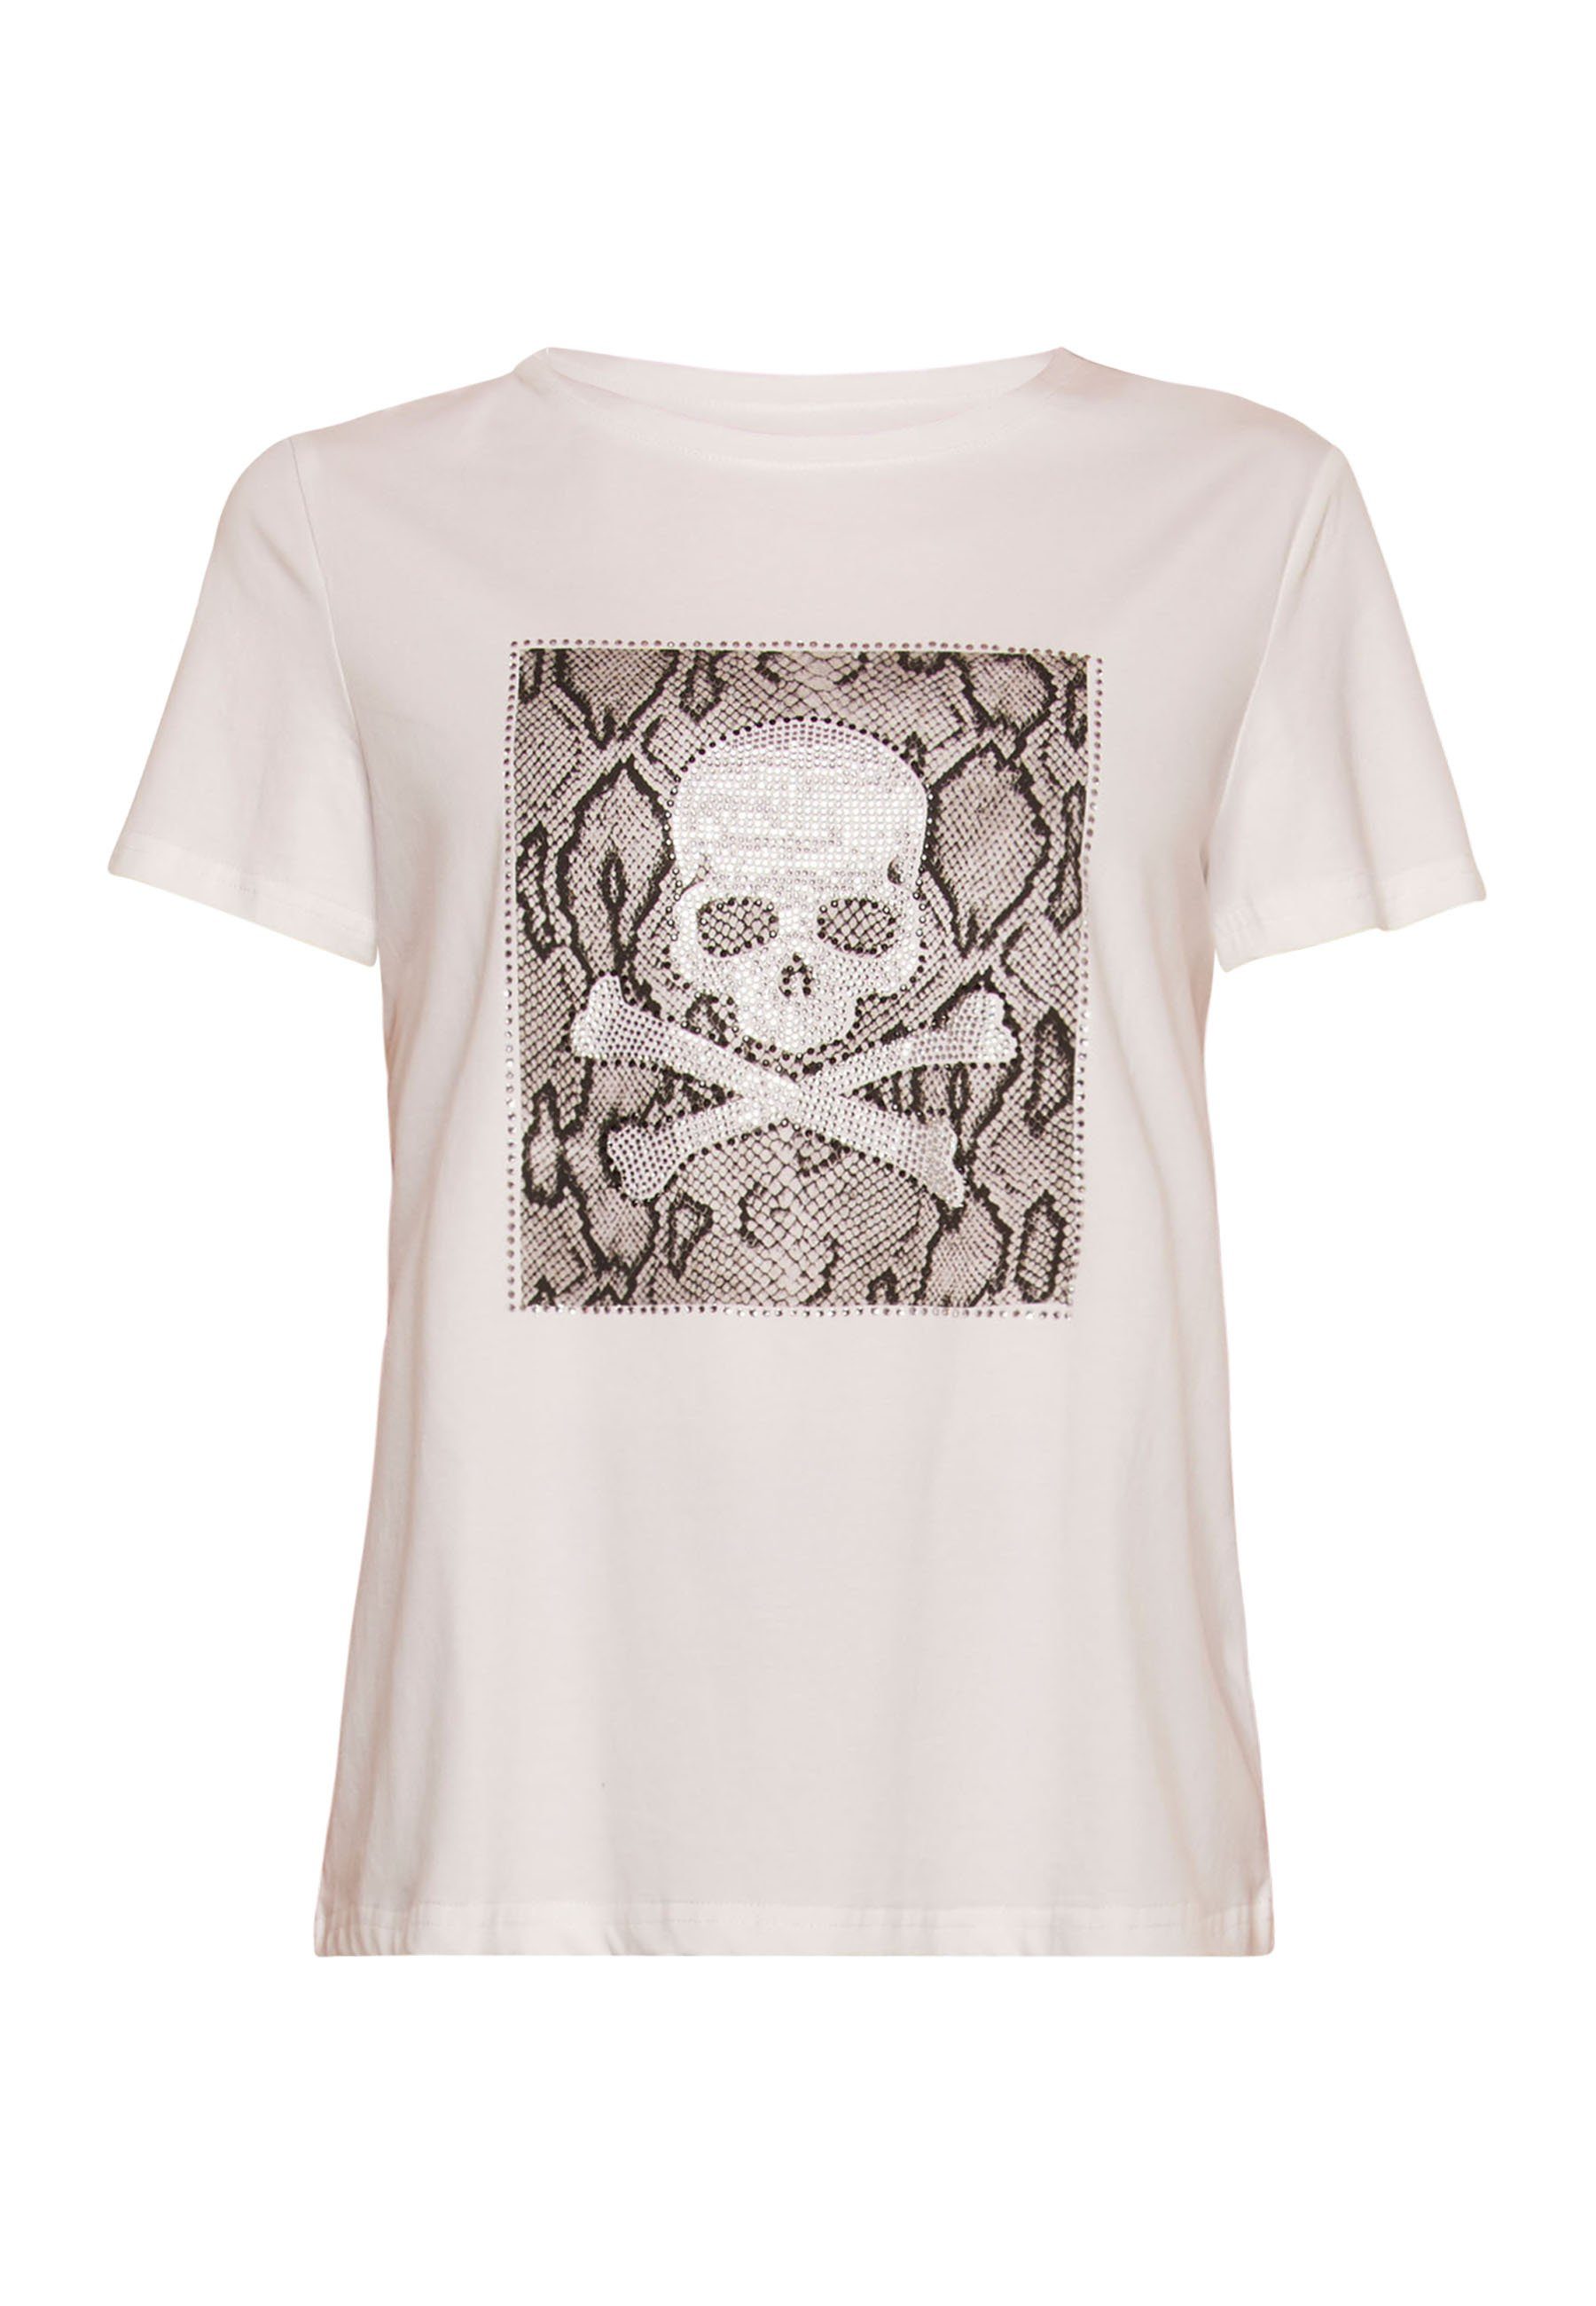 Tooche Print-Shirt Totenkopf T-shirt weiss